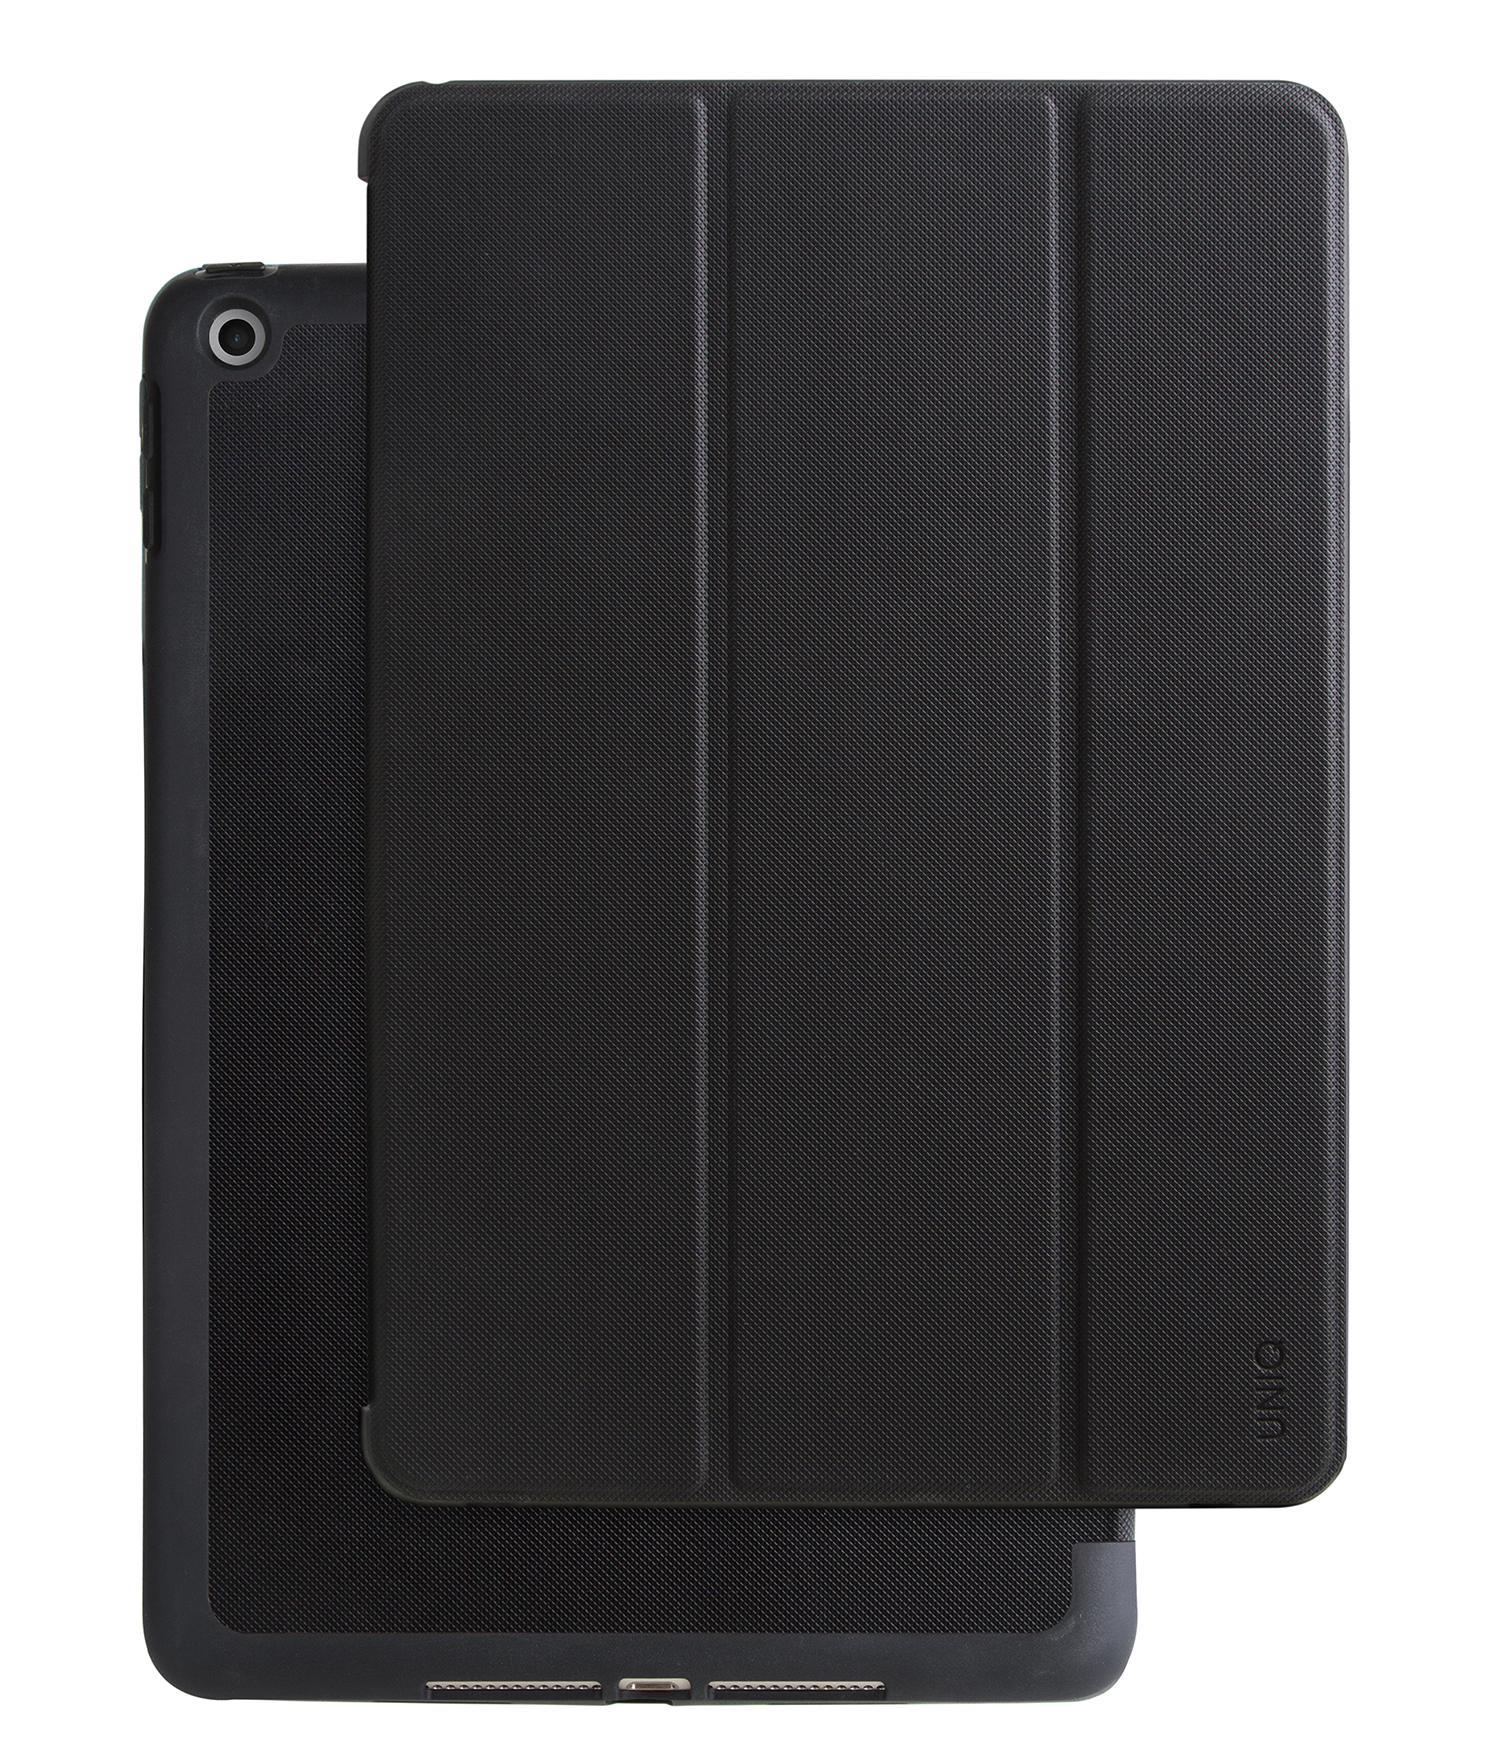 iPad 9,7", hoesje transforma rigor coral, zwart